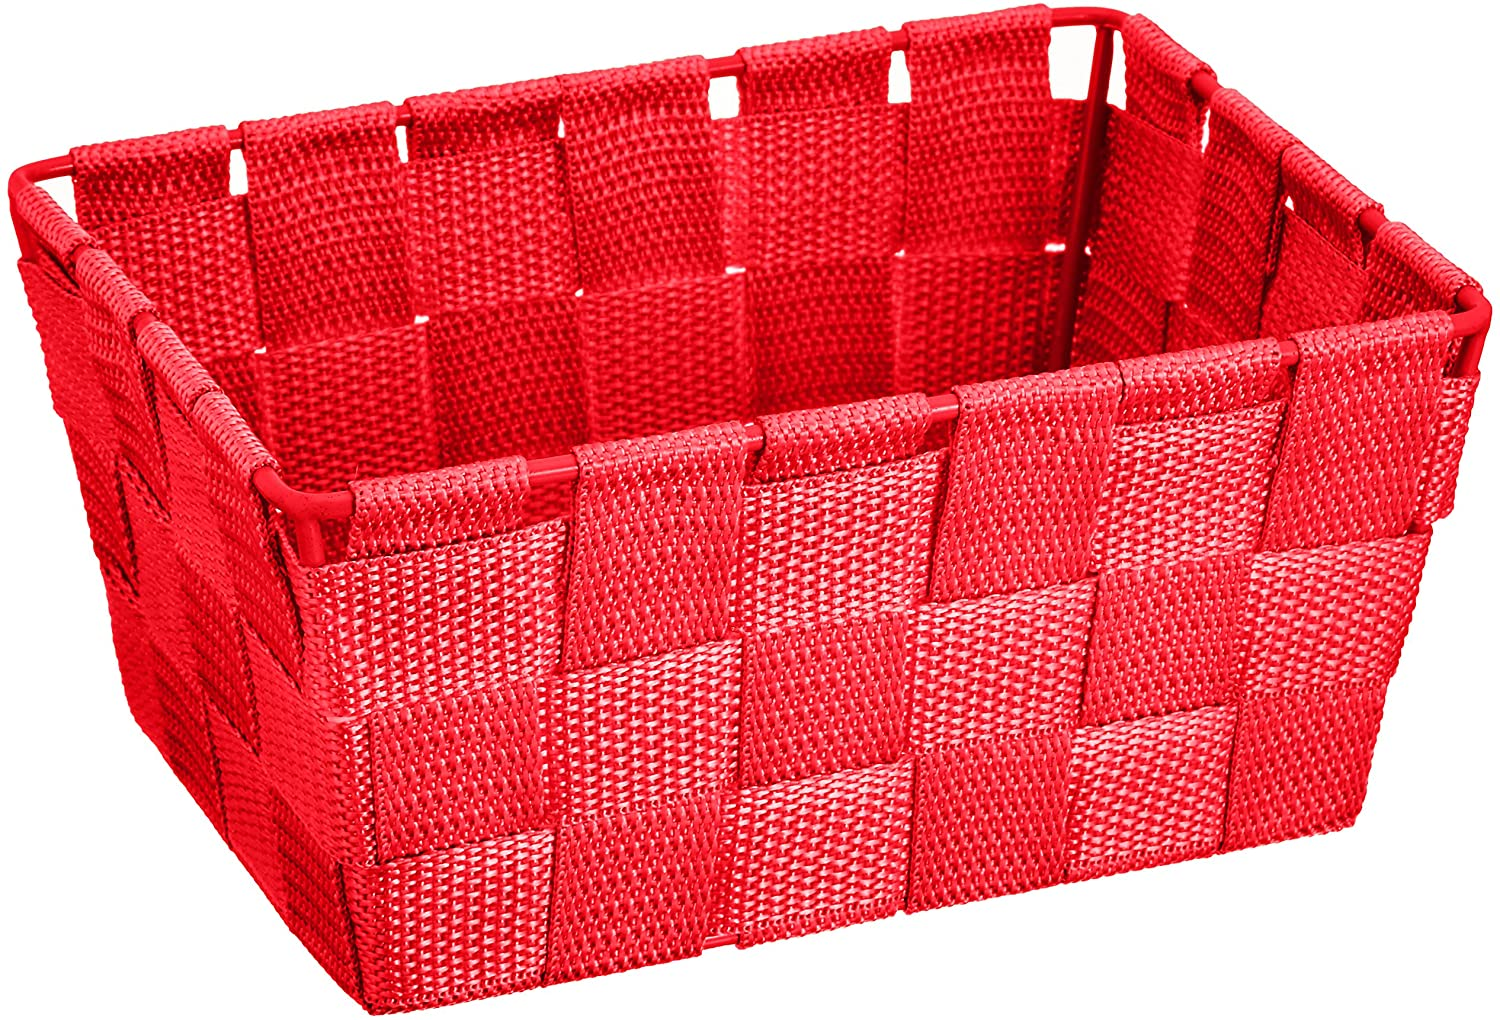 Aufbewahrungskorb Adria Mini Rot - Badkorb, rechteckig, Kunststoff-Geflecht, Polypropylen, 19 x 9 x 14 cm, Rot